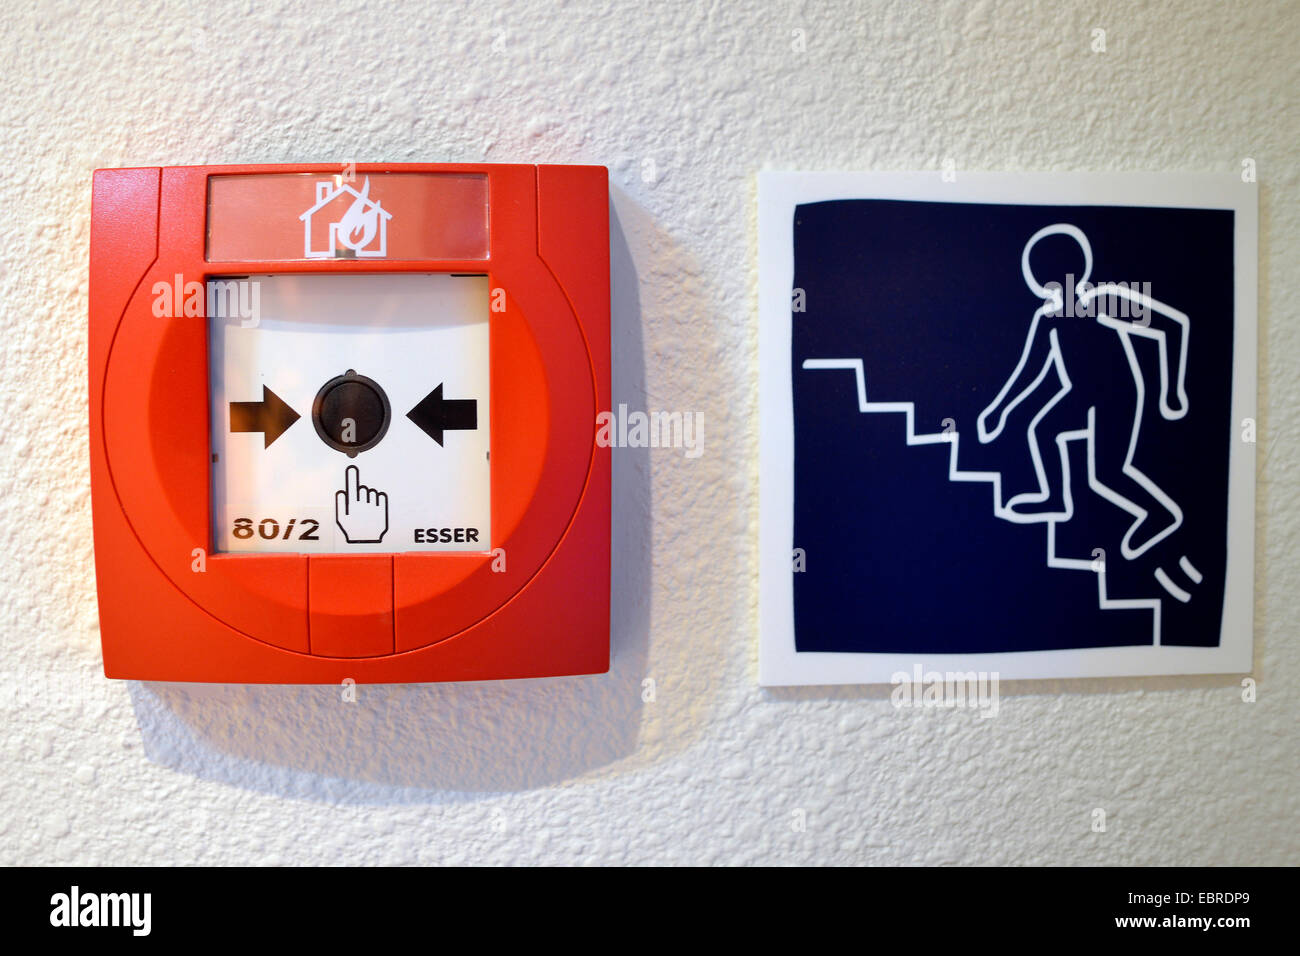 Dispositivo de alarma de incendio y el símbolo imagen para escapar de pasillo, Alemania Foto de stock